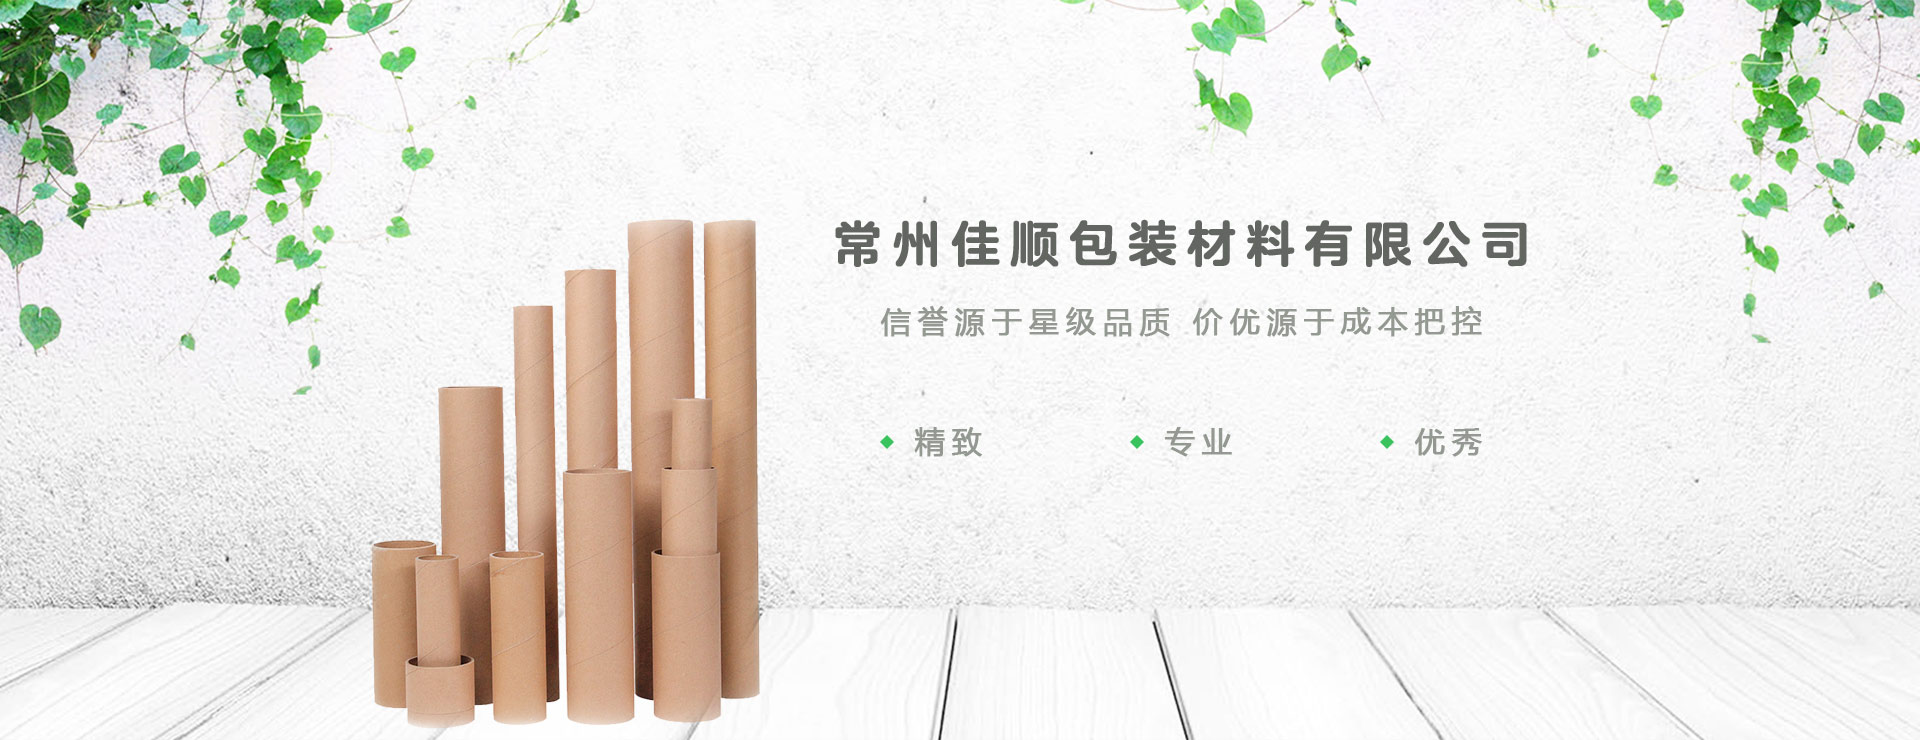 江蘇工業紙管,螺旋紙管生產廠家,化纖紙管